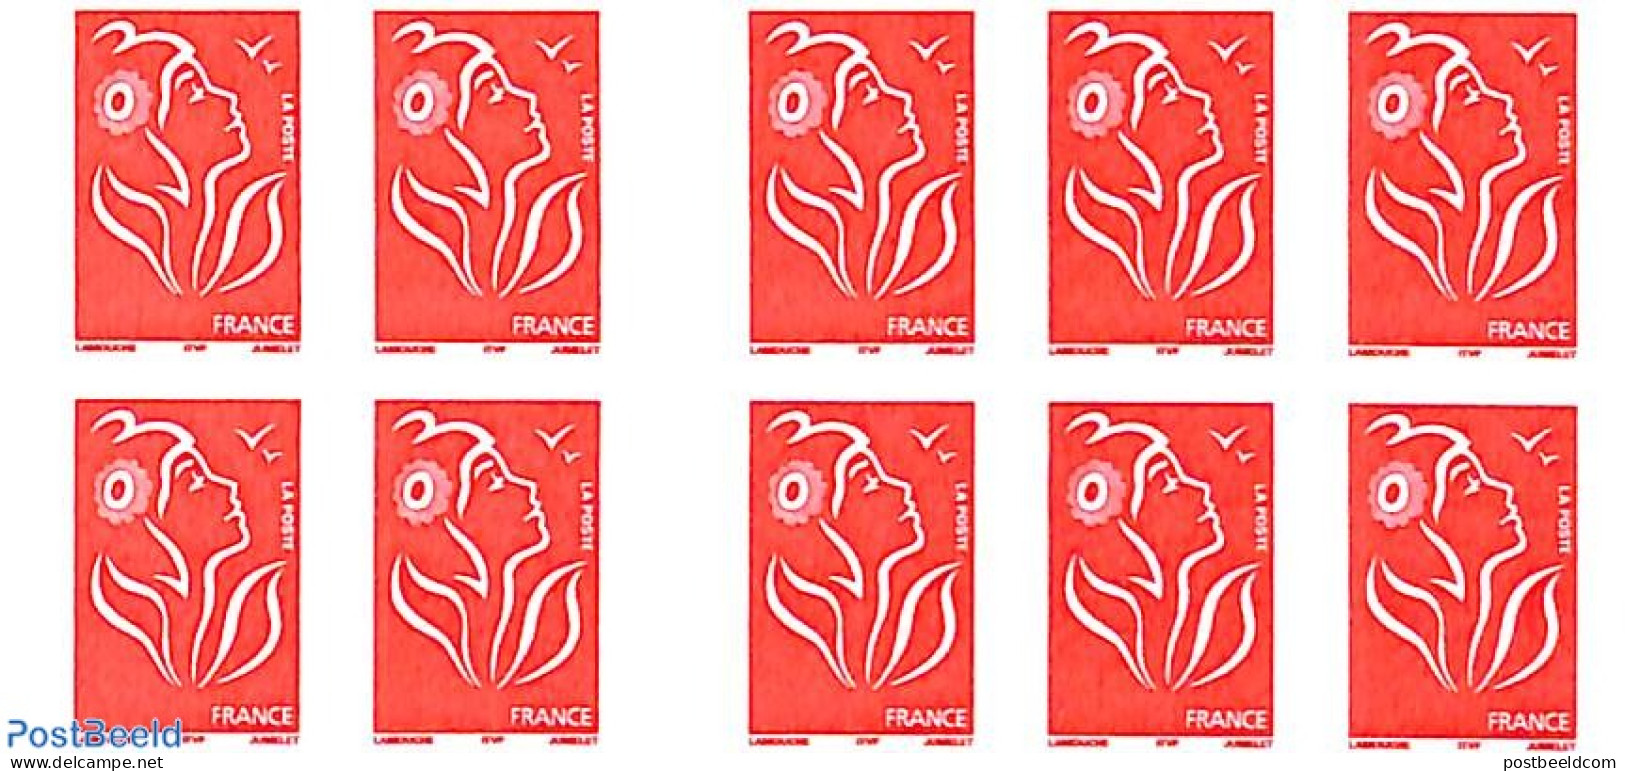 France 2006 La Poste Vous Les Réserve, Booklet 10x Rouge S-a, Mint NH, Stamp Booklets - Unused Stamps